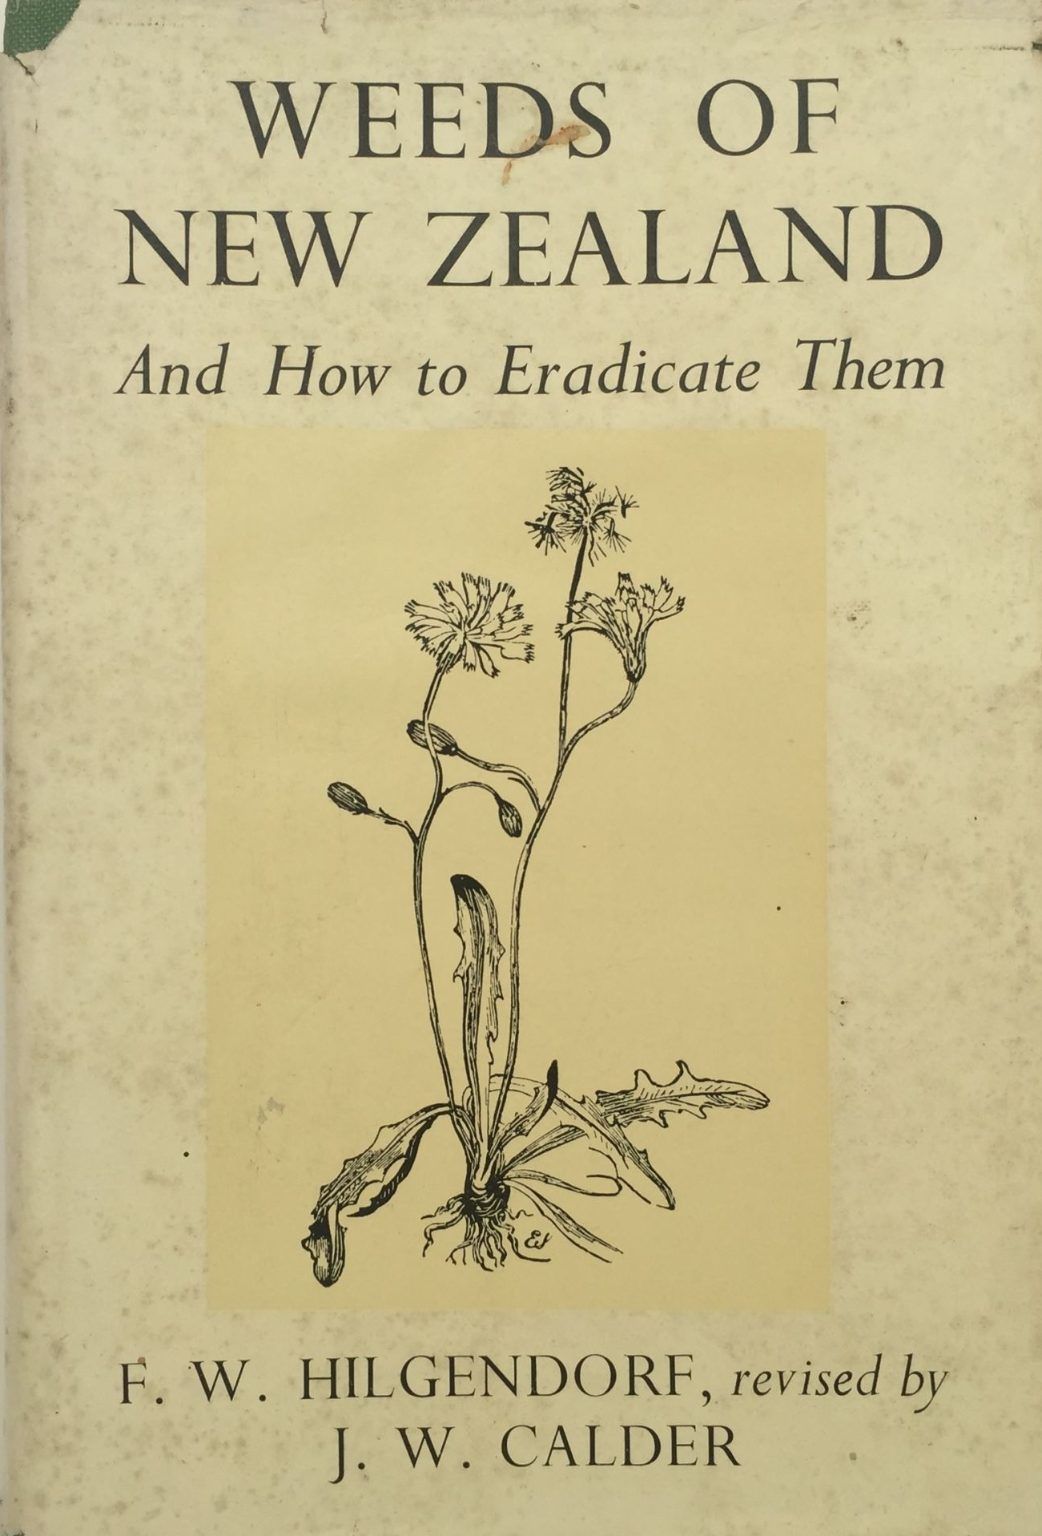 WEEDS OF NEW ZEALAND